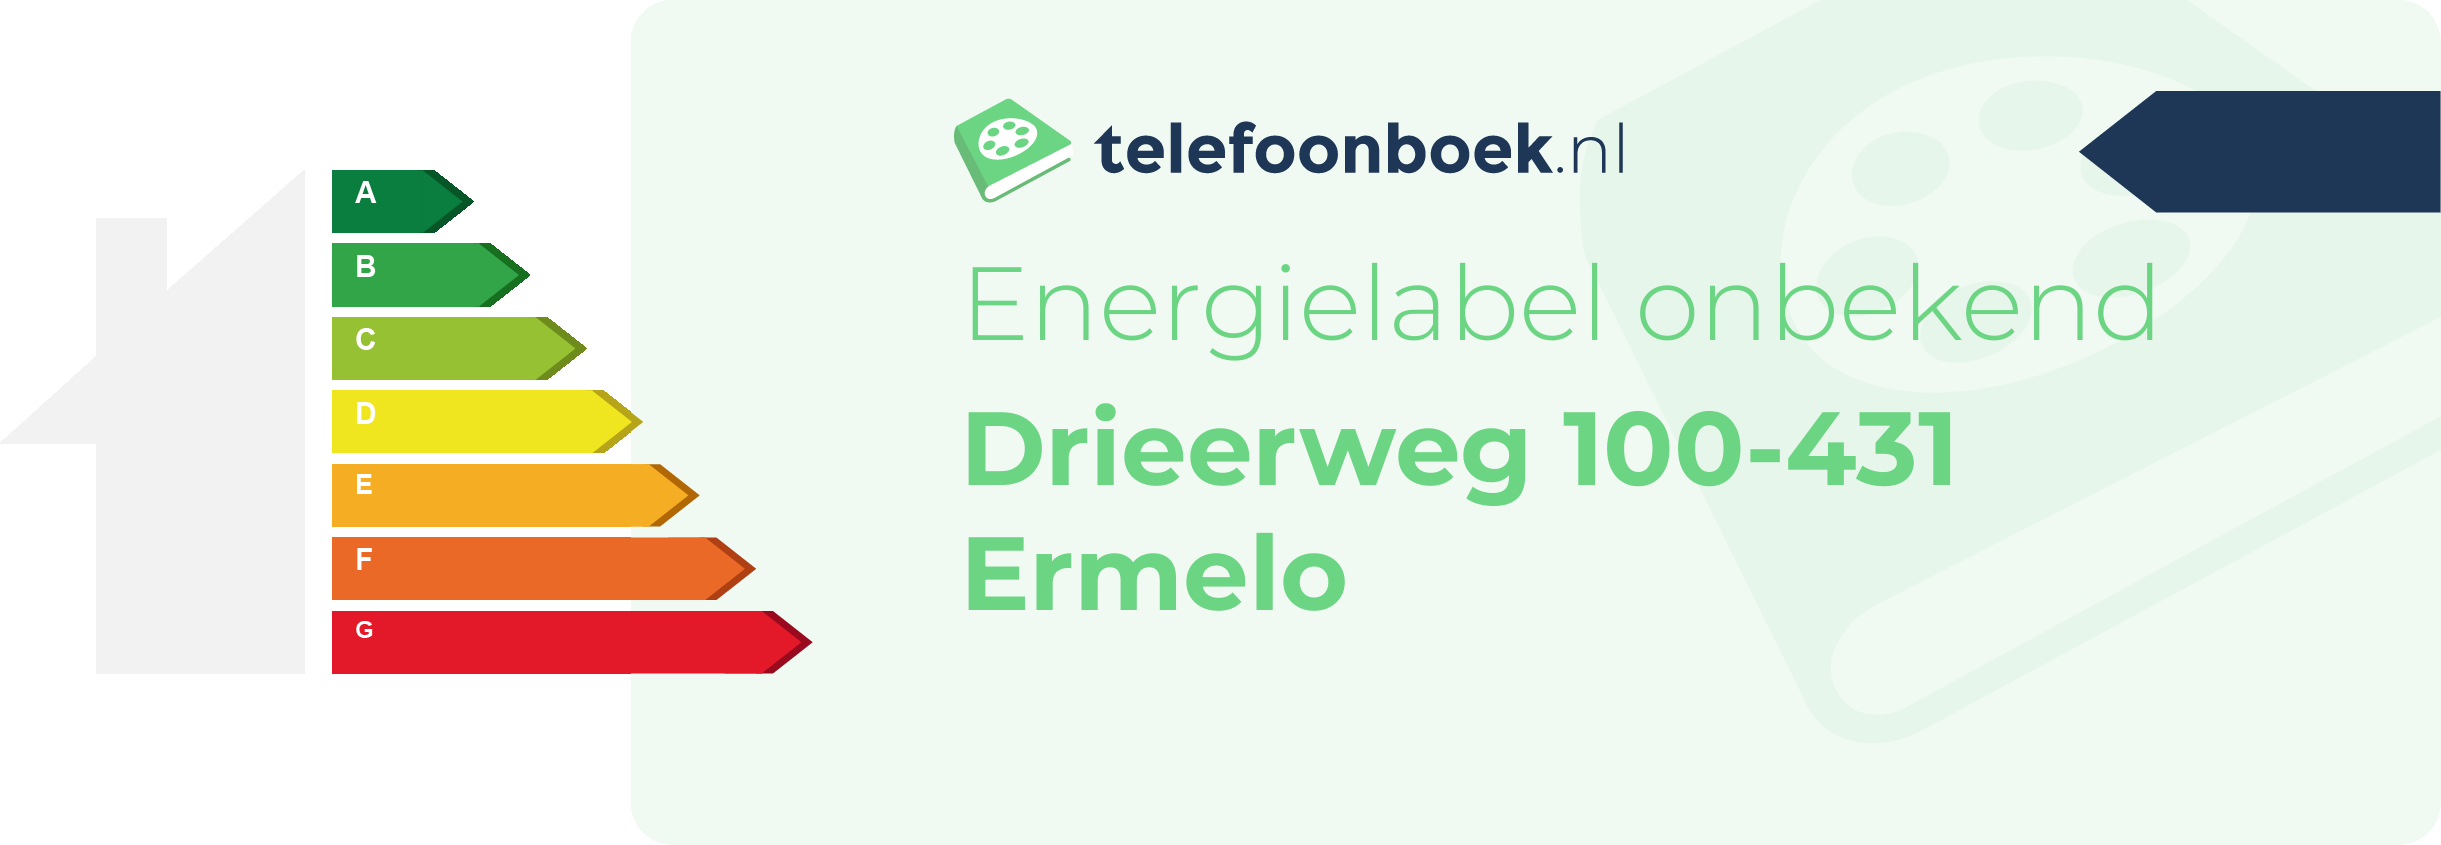 Energielabel Drieerweg 100-431 Ermelo